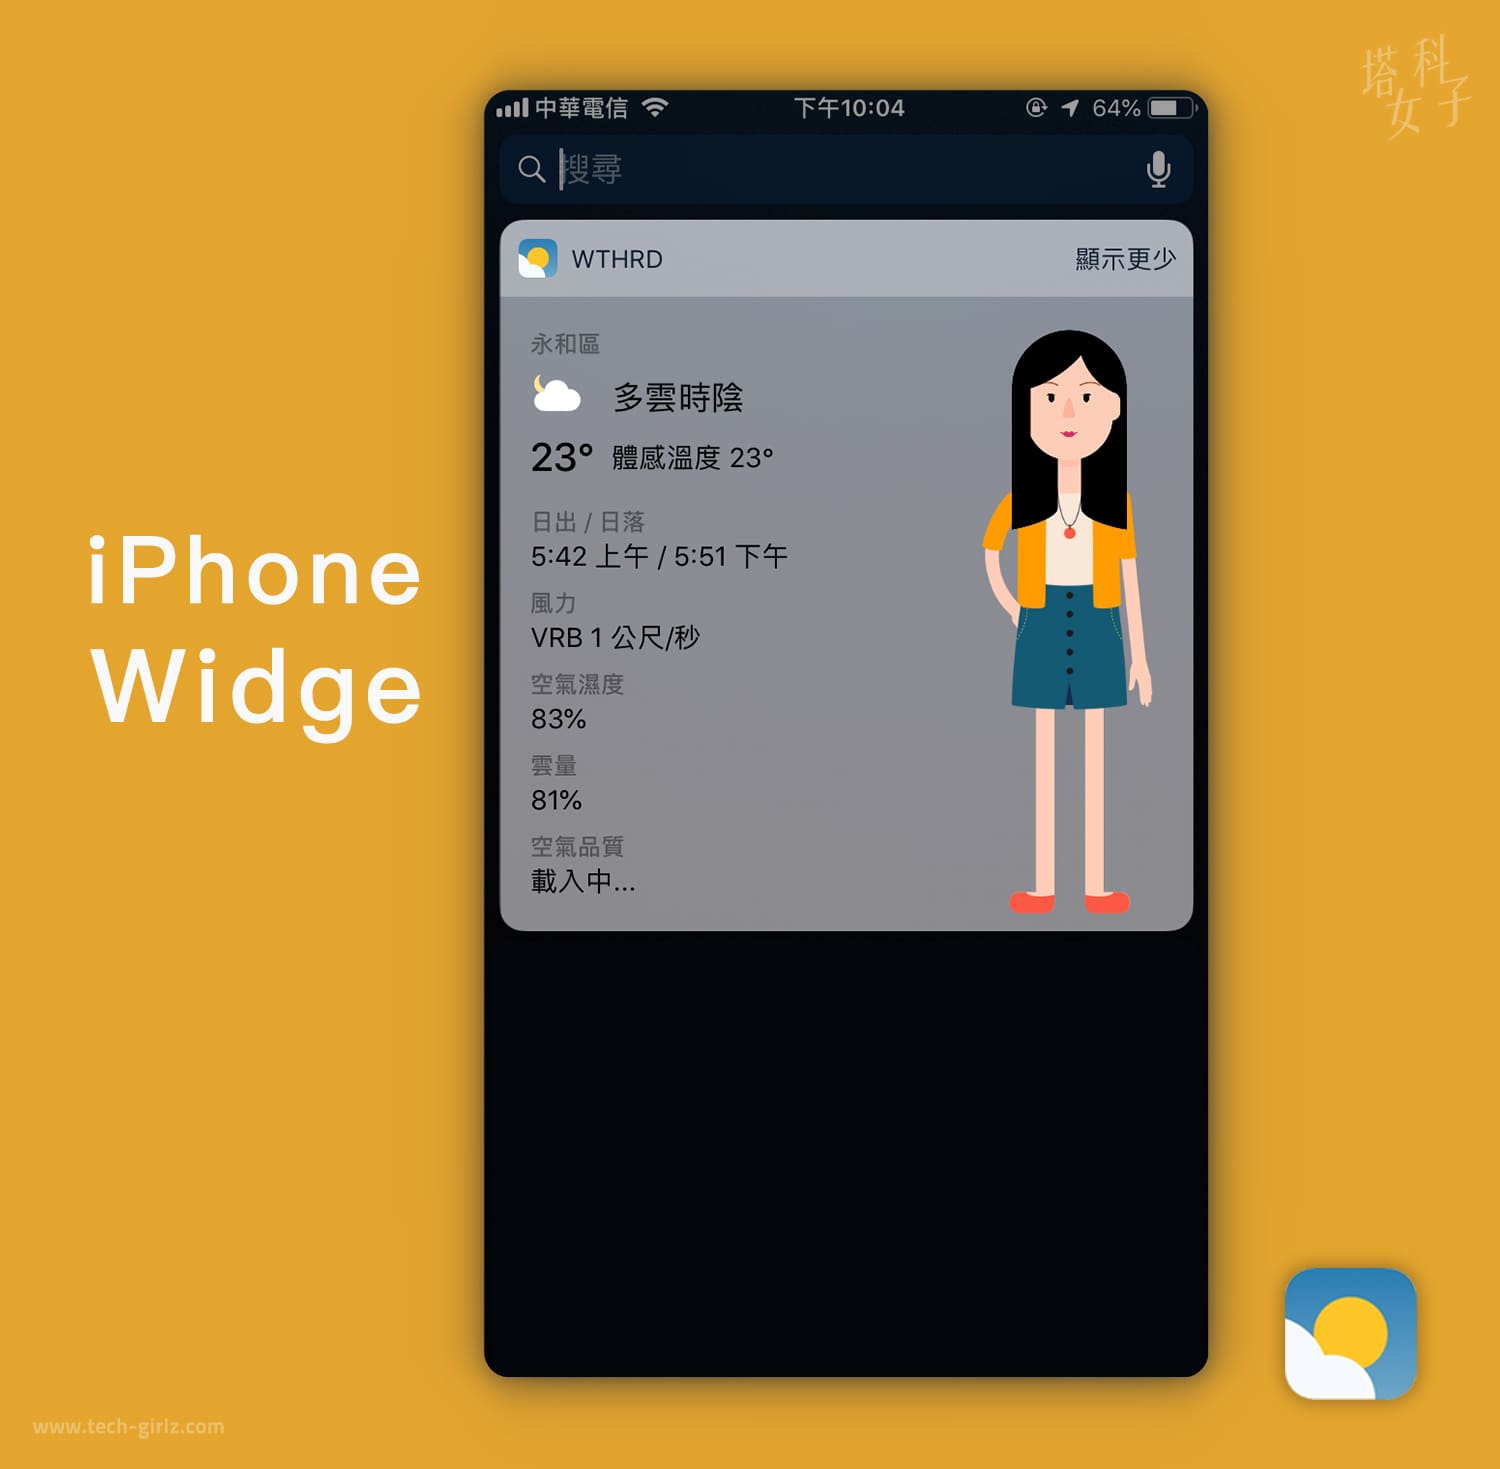 天氣 APP 推薦 - WTHRD 支援 iPhone Widget